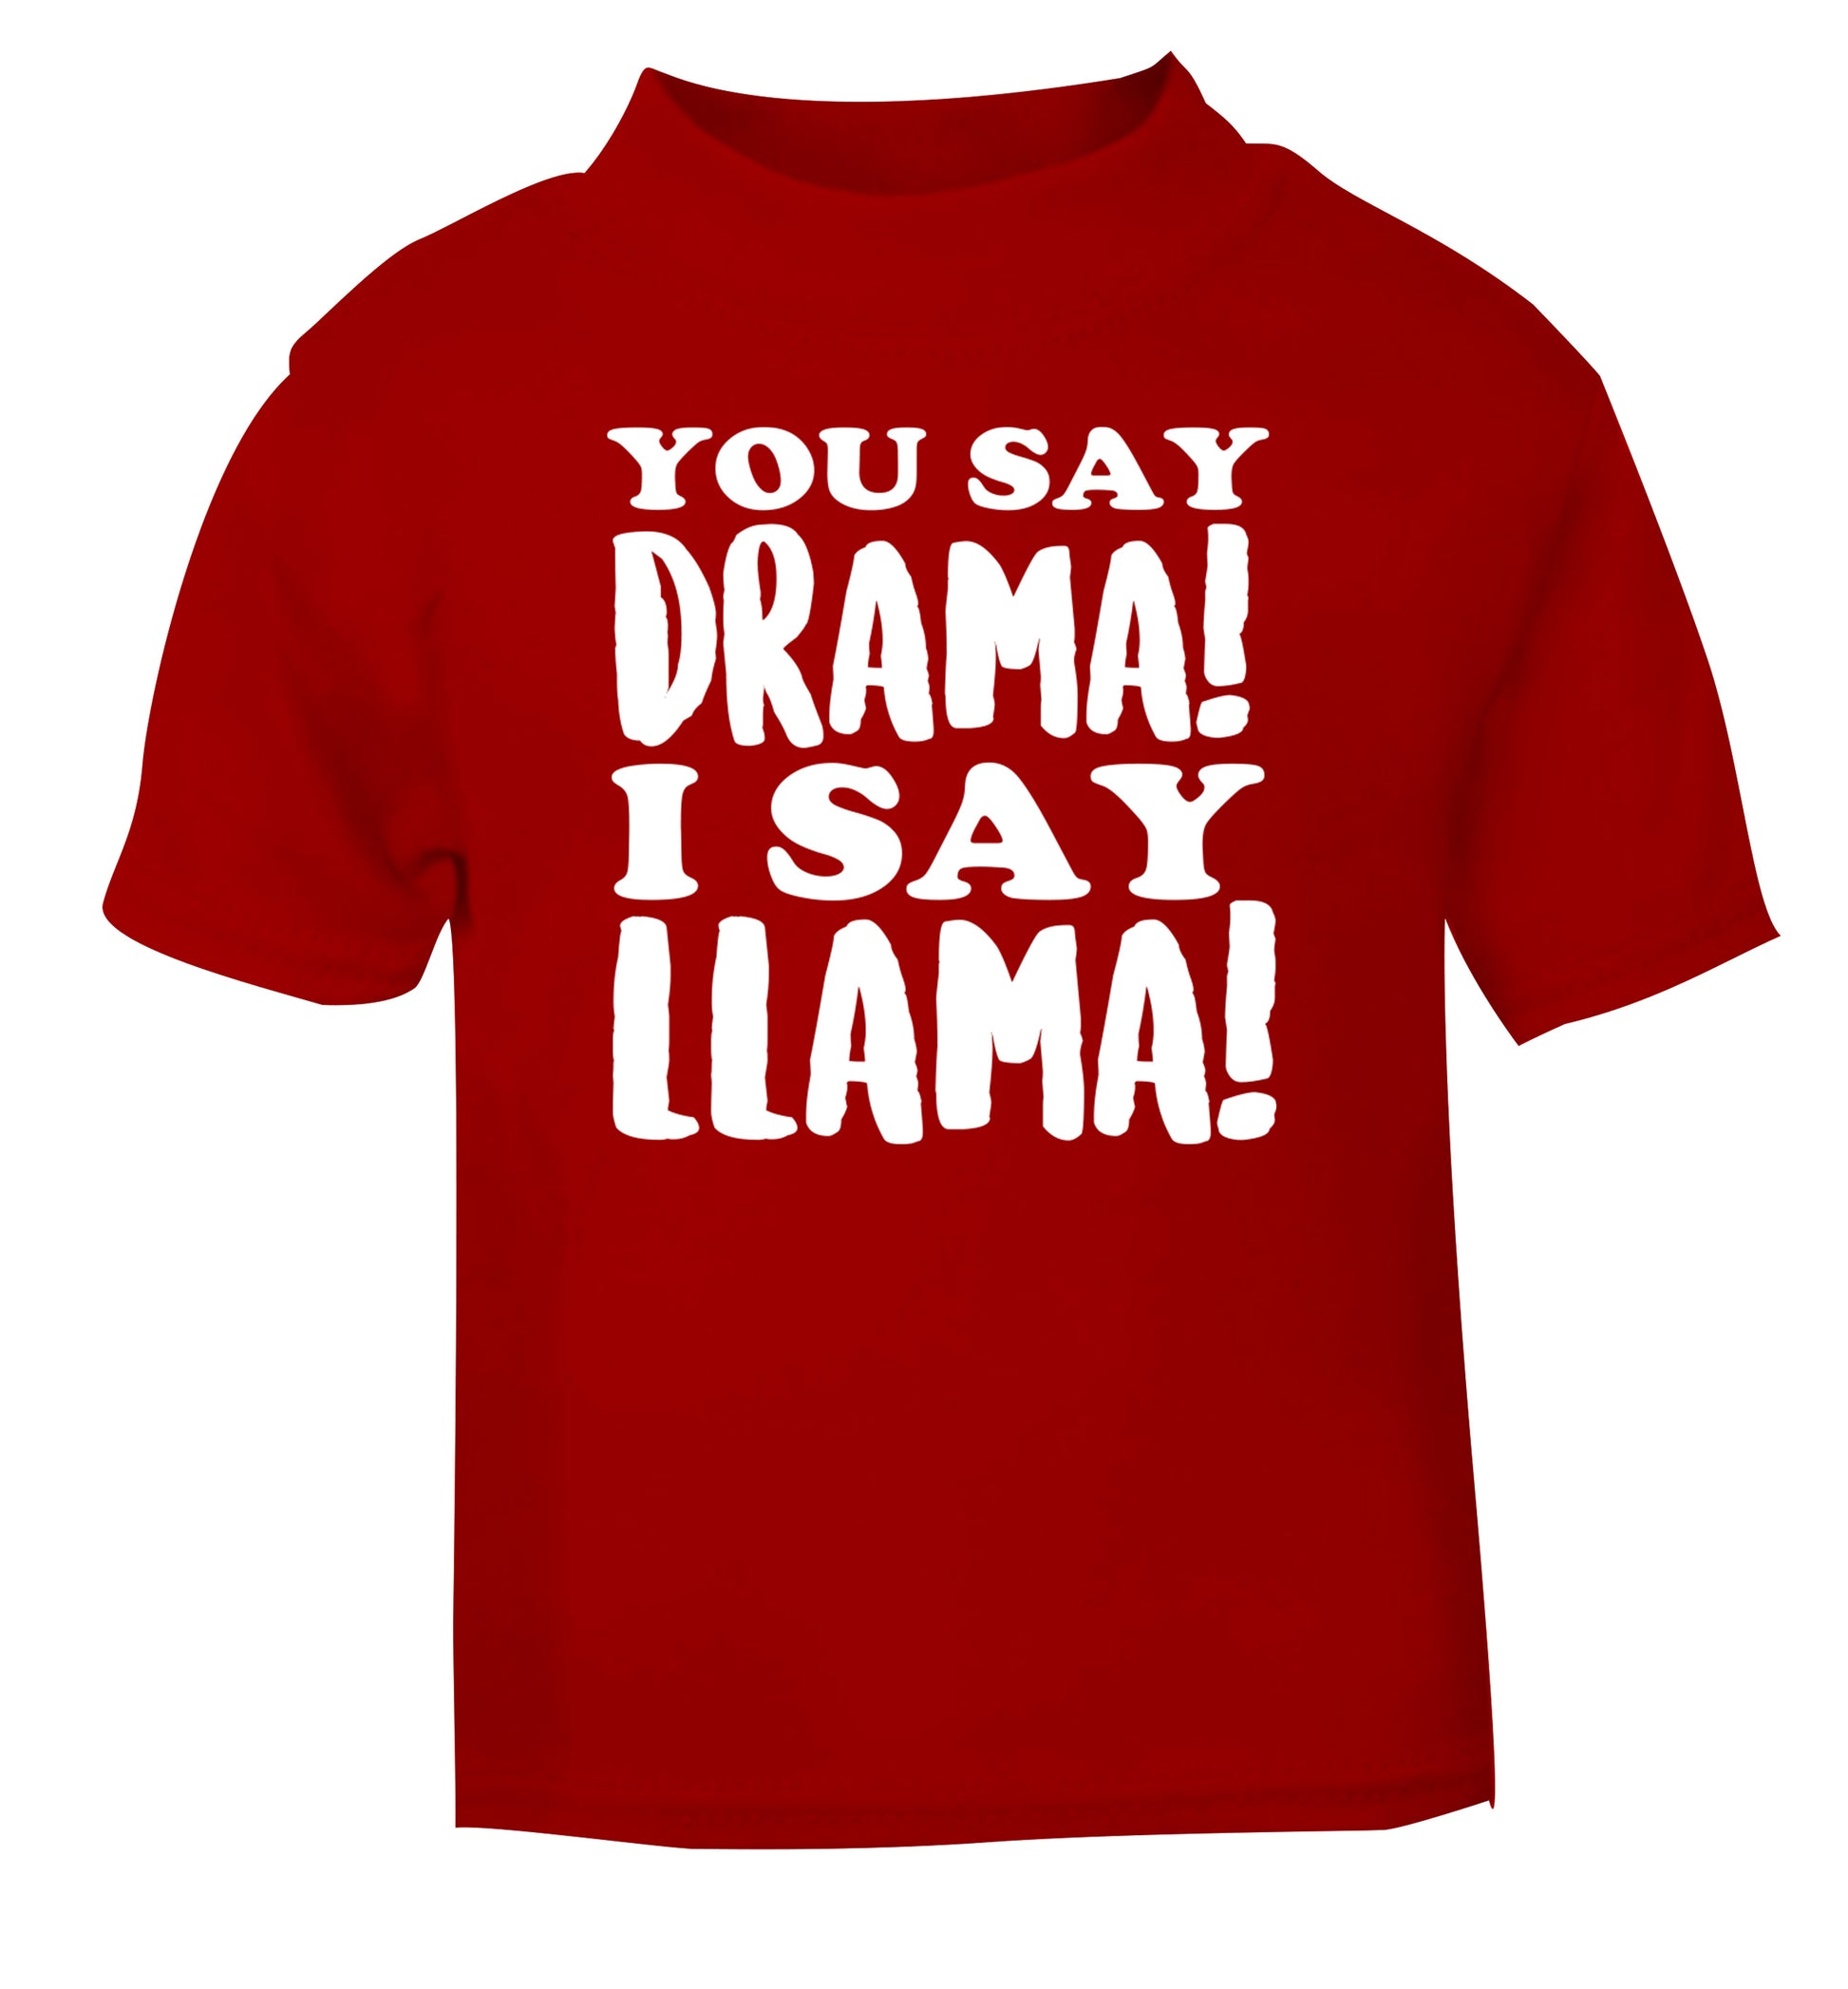 You say drama I say llama! red Baby Toddler Tshirt 2 Years